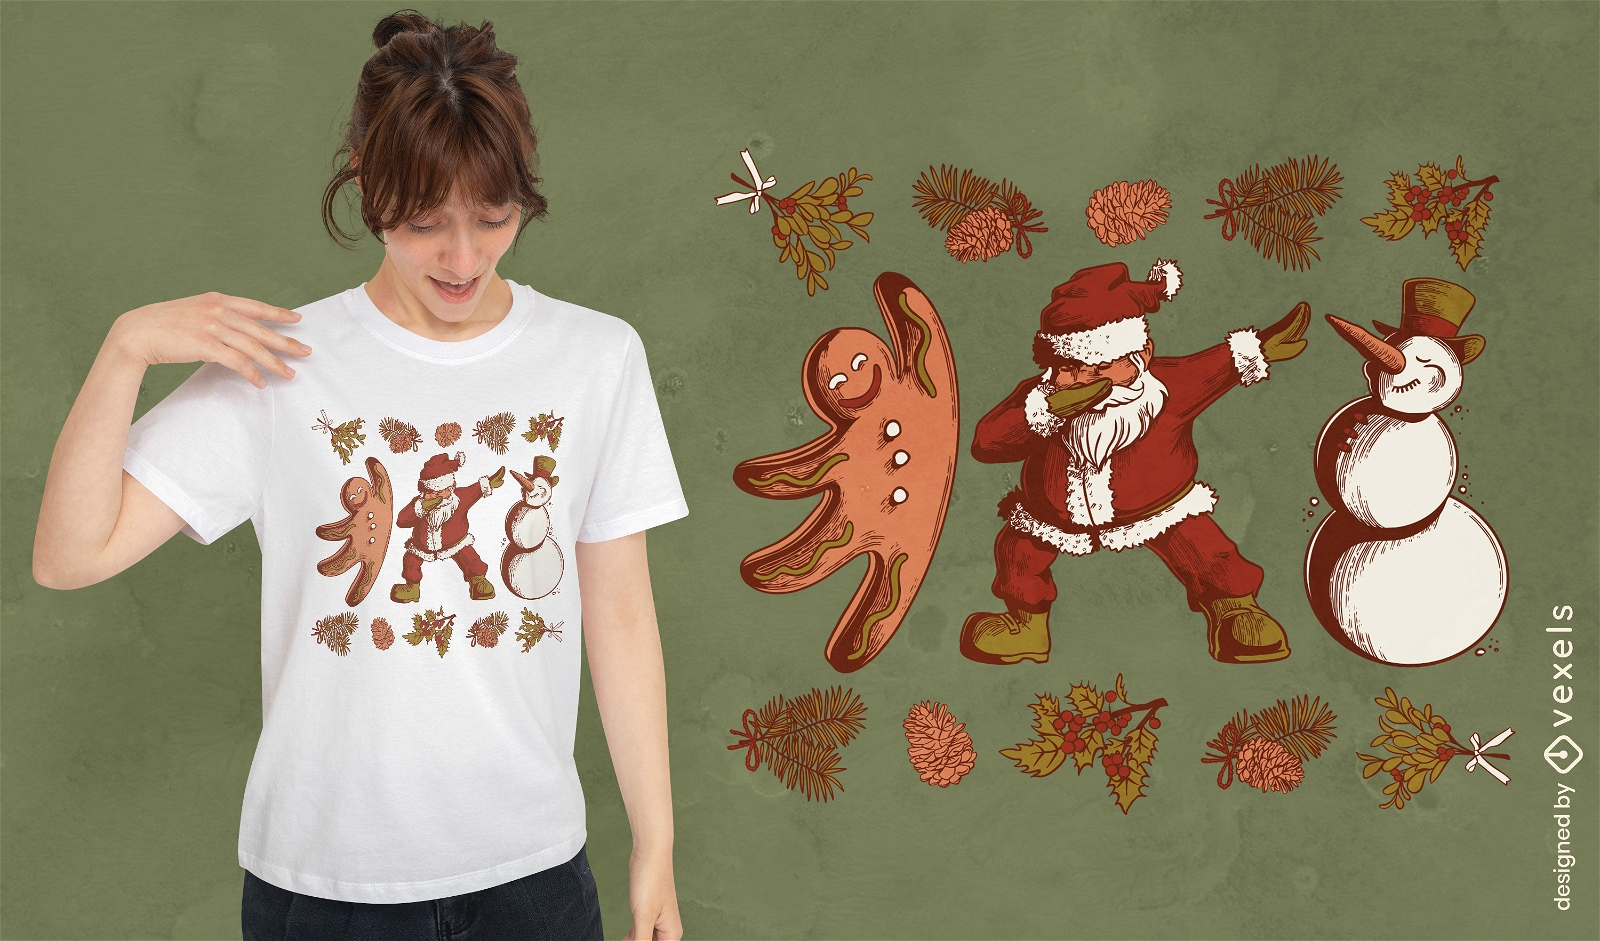 Vintage Weihnachtsfiguren T-Shirt Design